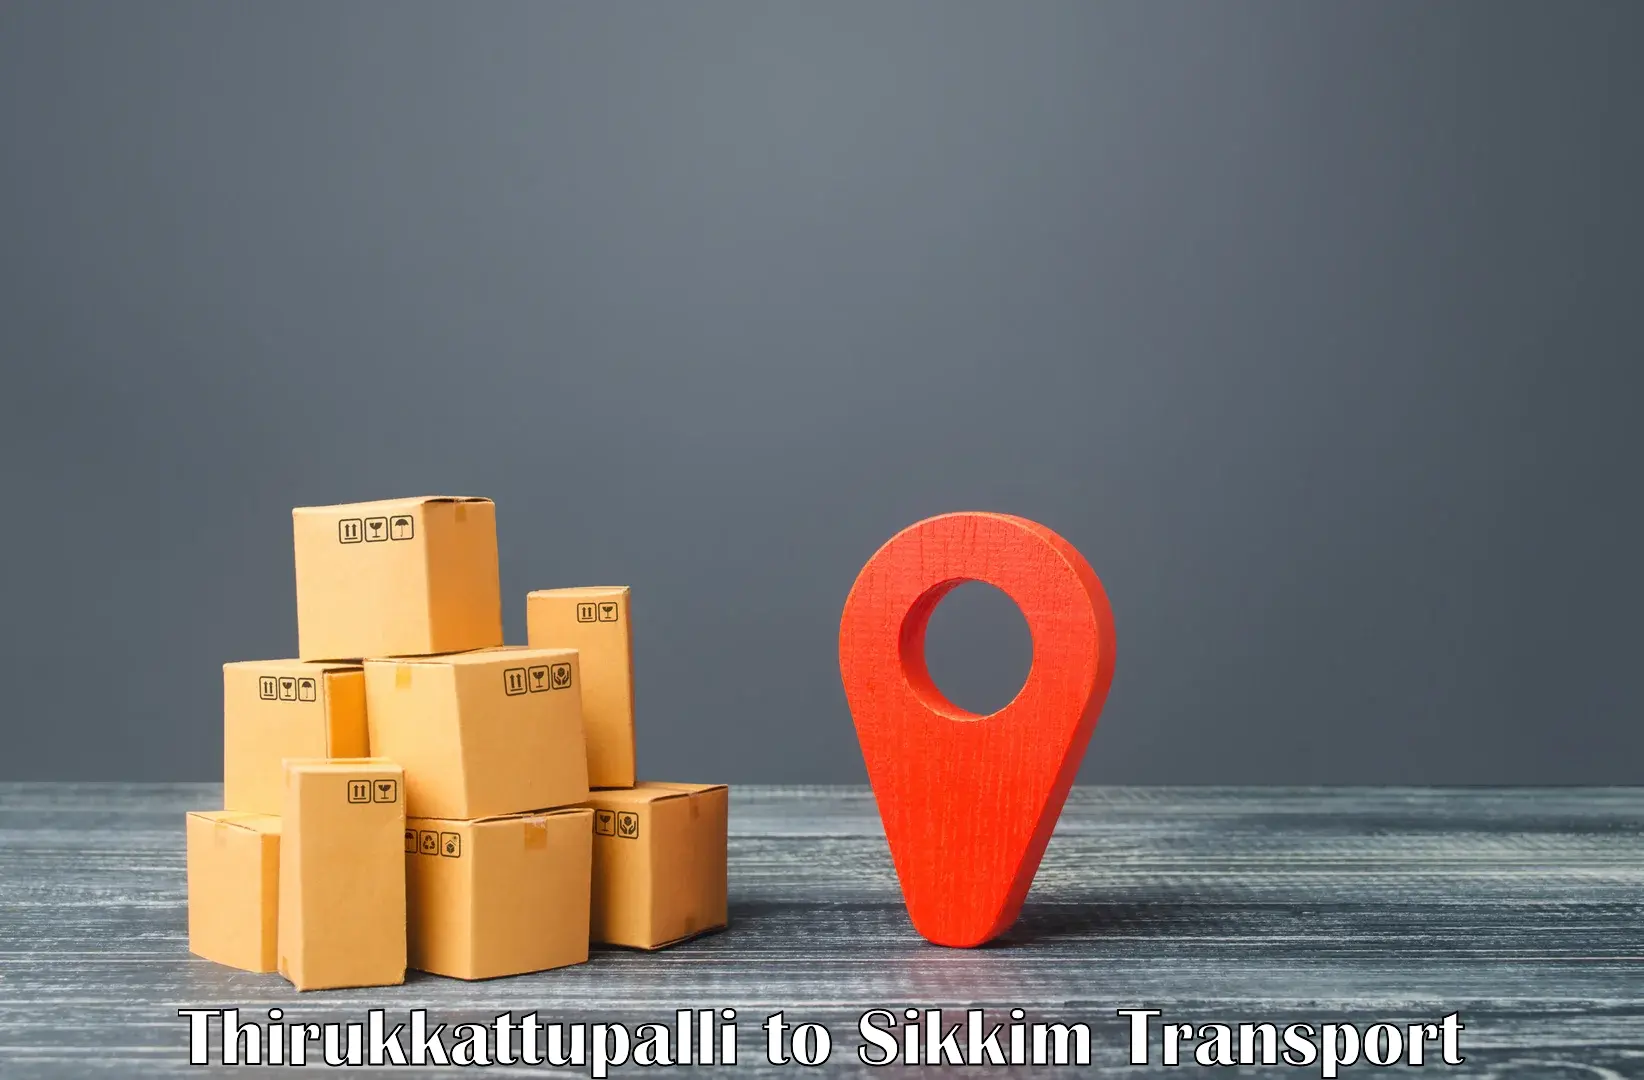 Bike transfer Thirukkattupalli to North Sikkim